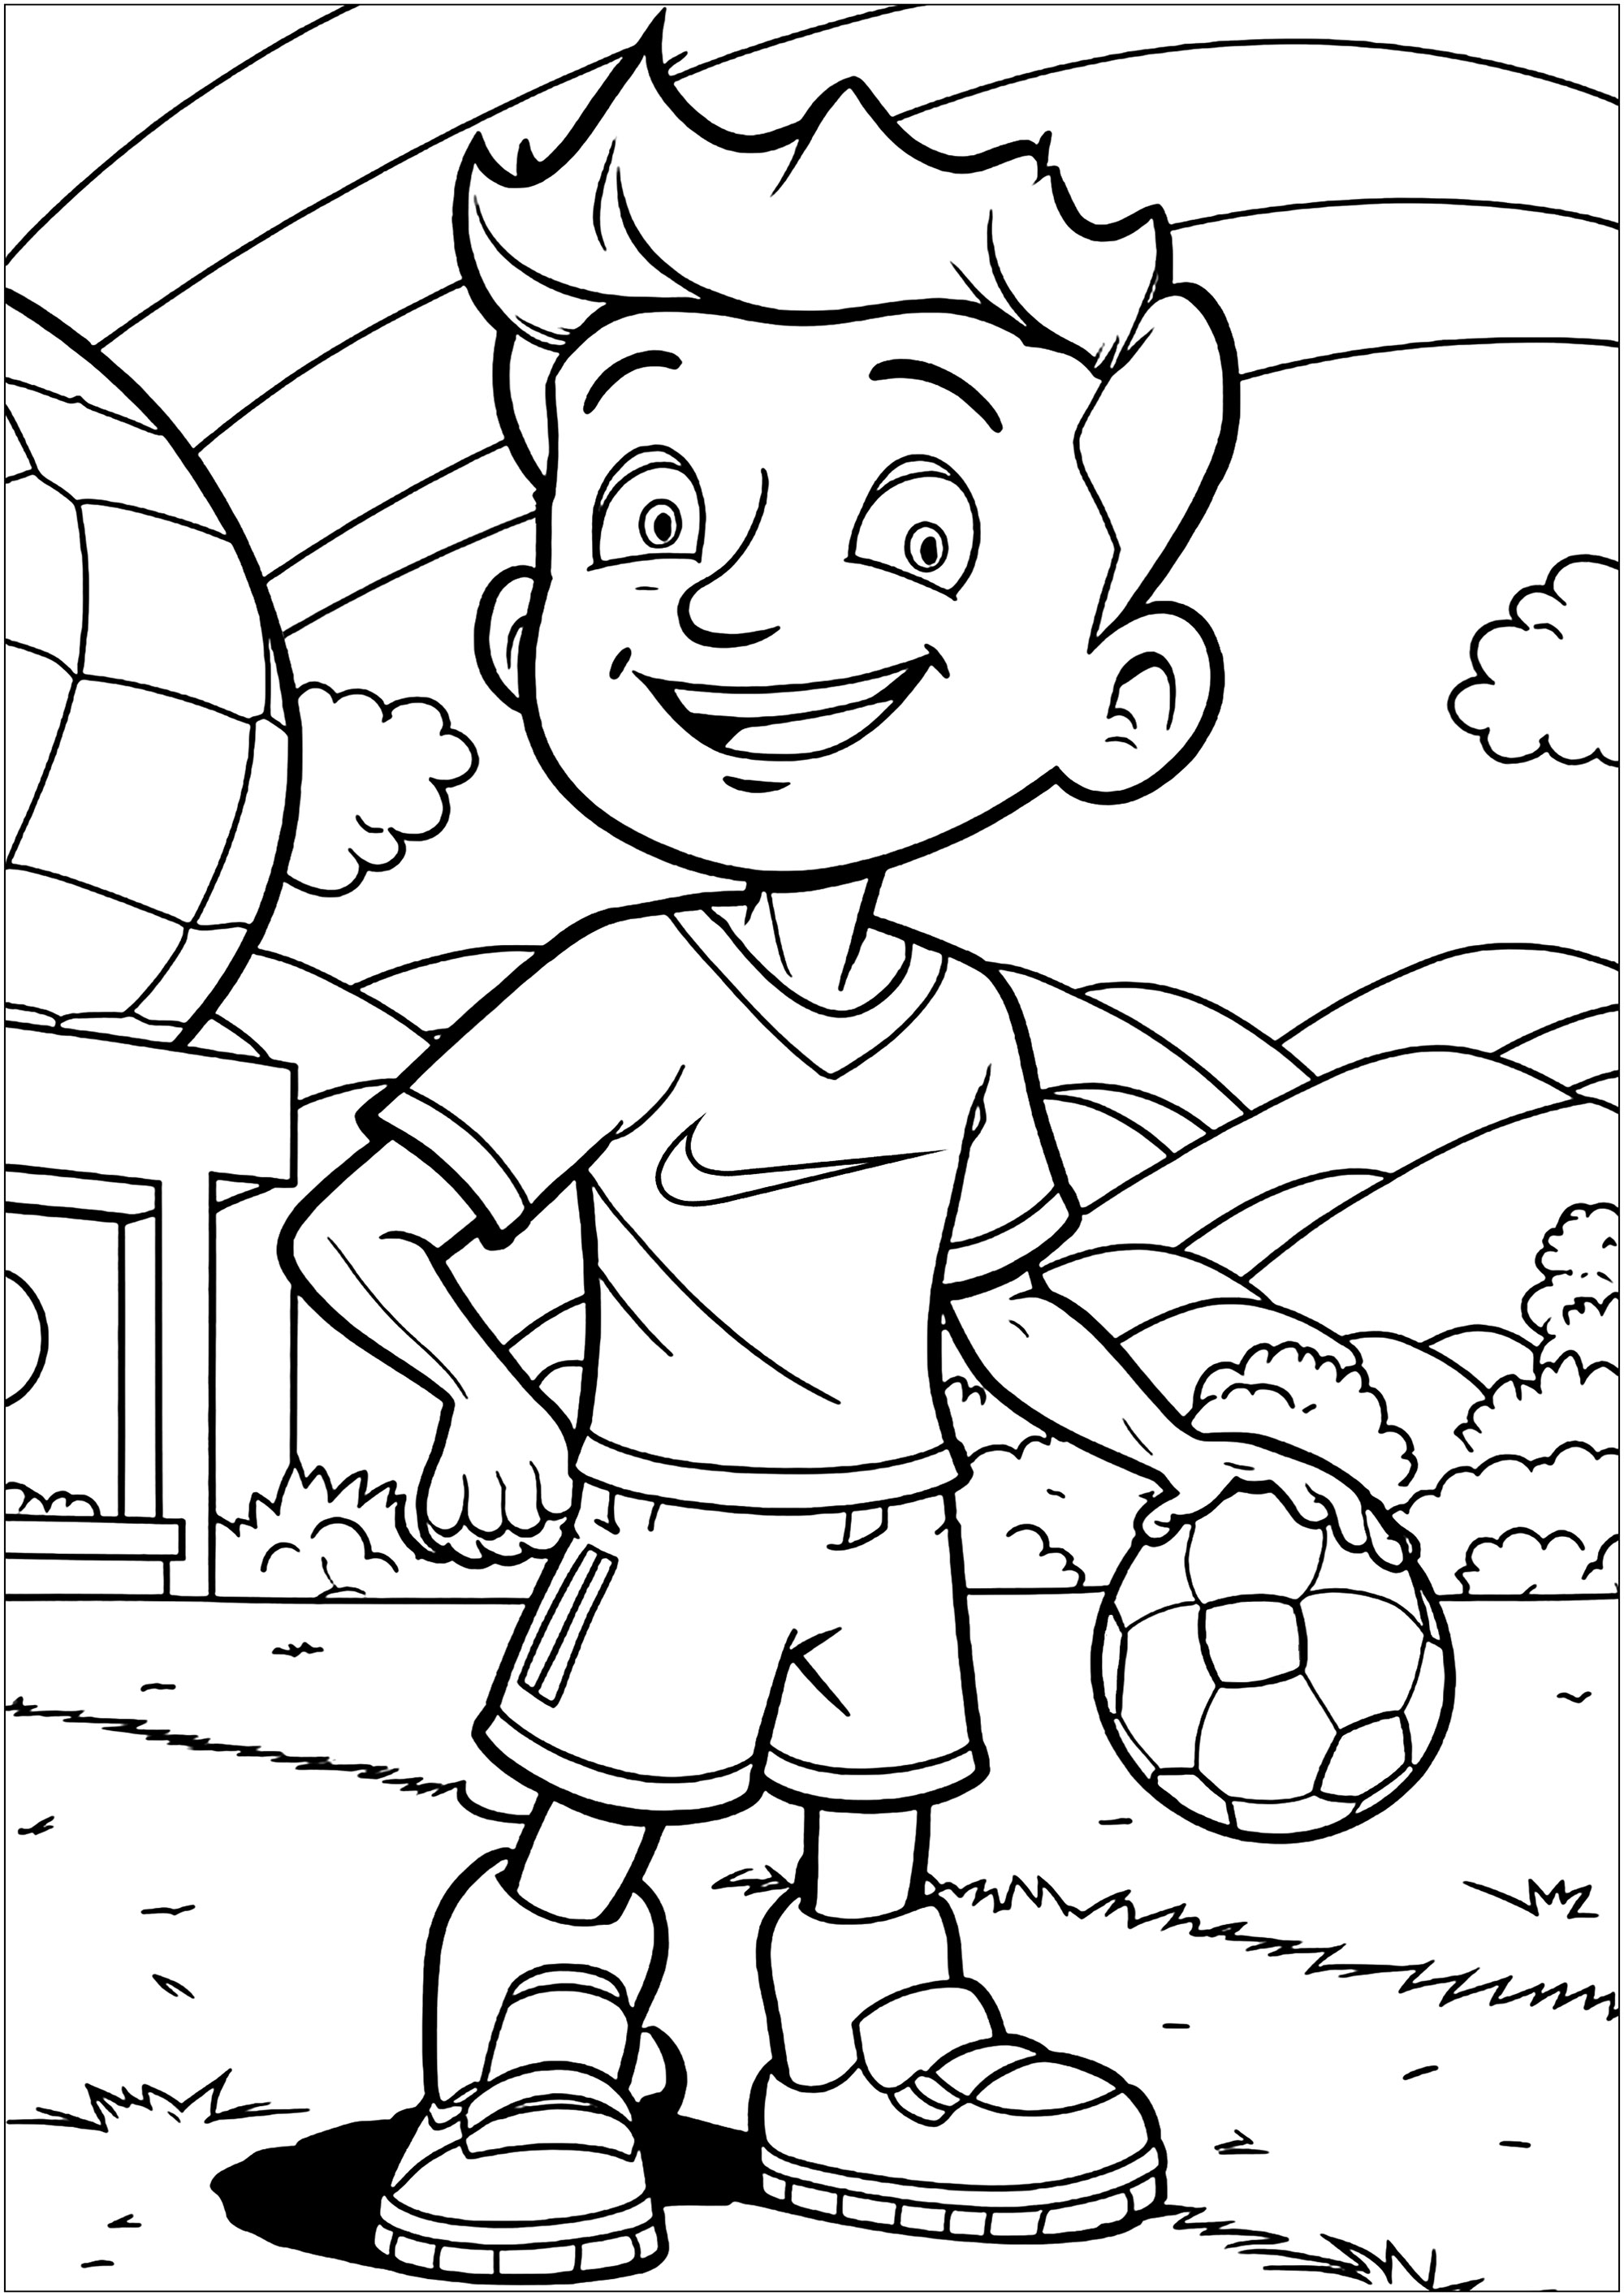 Coloriage d'un jeune footballer sur son terrain. Les petits artistes pourront s'amuser à choisir des couleurs pour le maillot du footballeur, le beau logo Nike, le ballon et le terrain.
